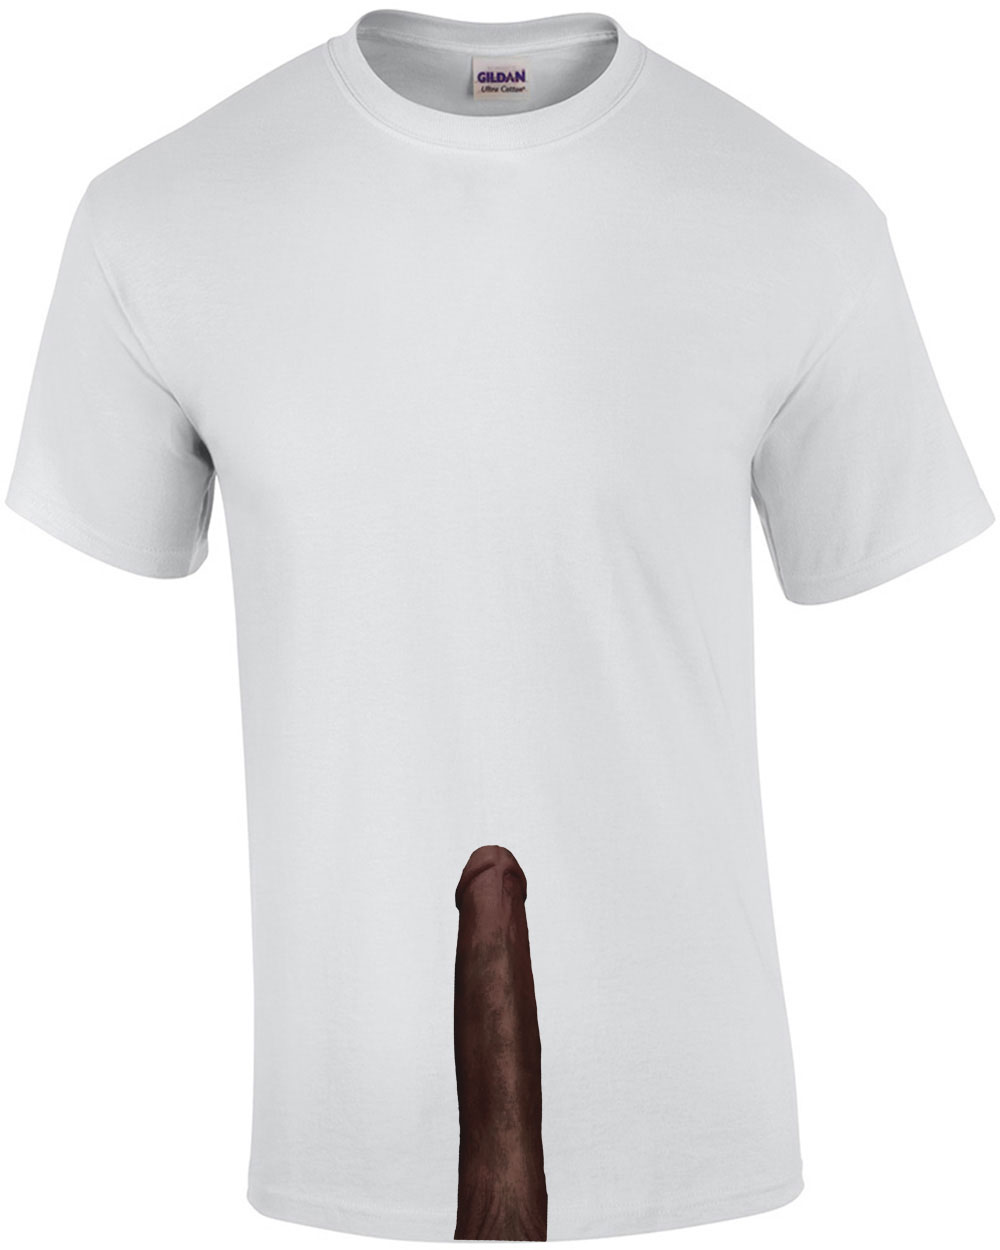 Black Penis Shirt T Shirt - roblox black cop shirt